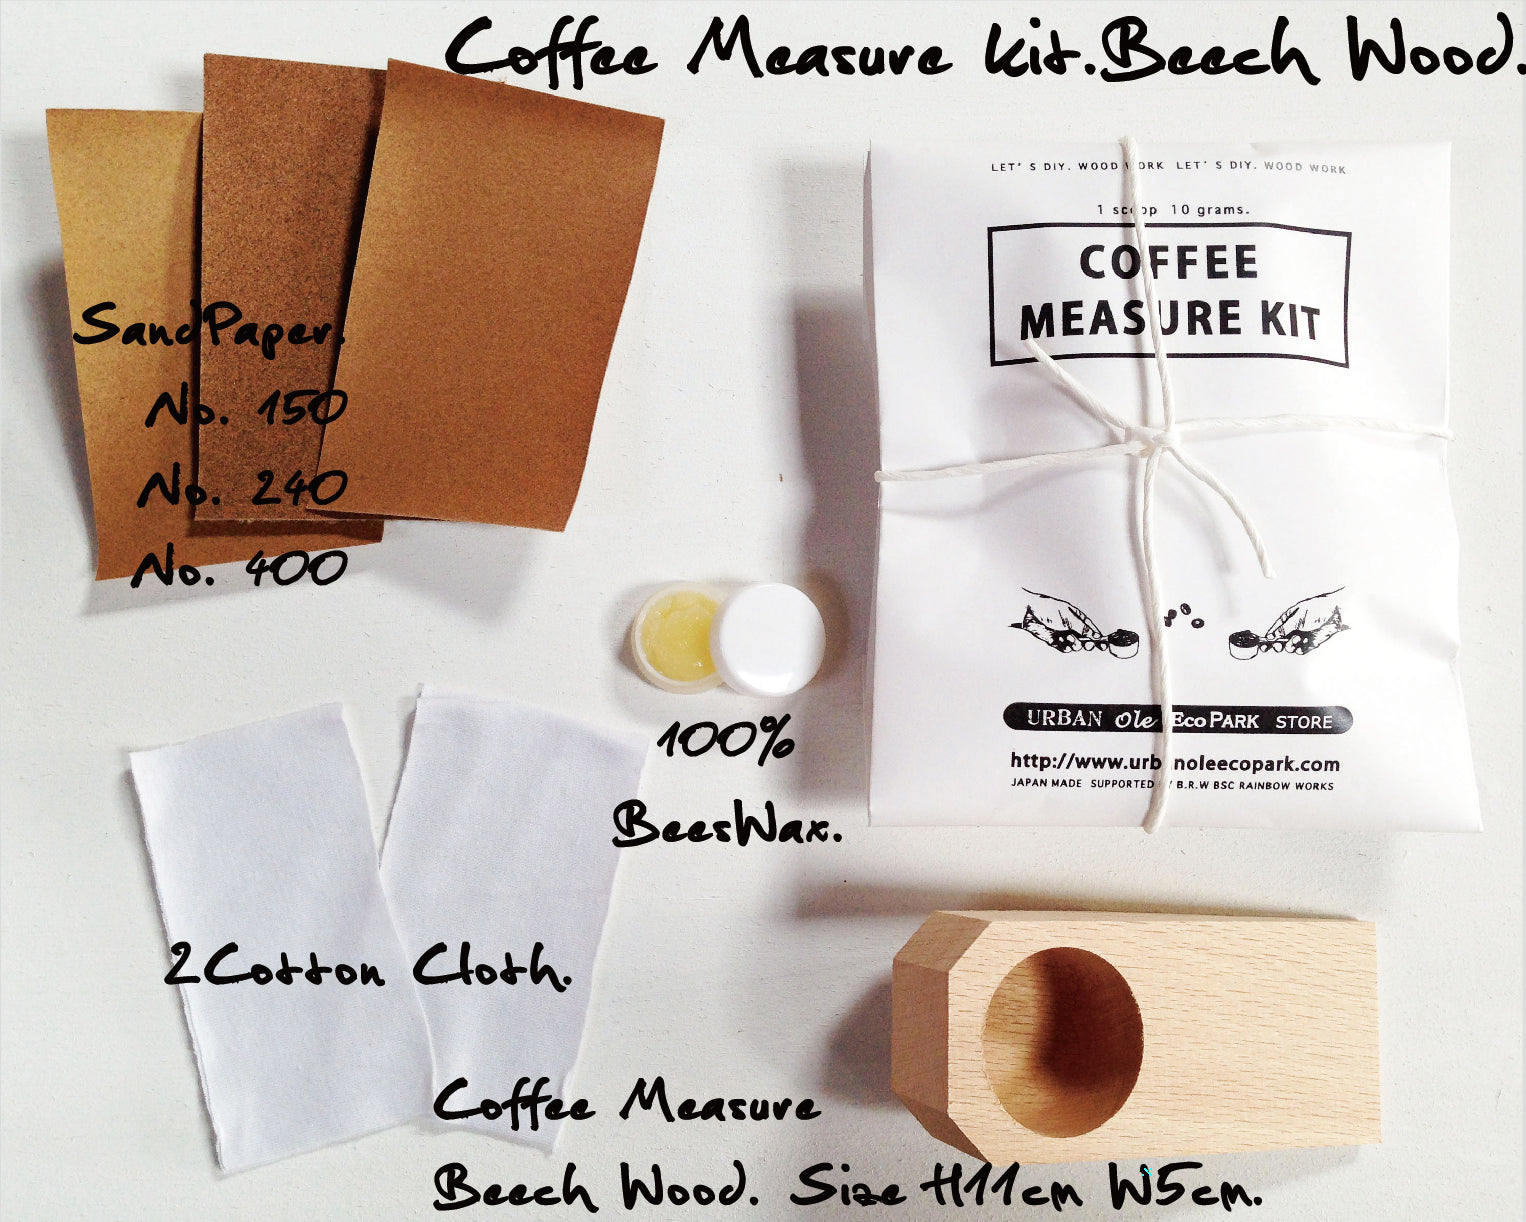 Japanese Whittling DIY Kit - Make My Own Coffee measure Kit